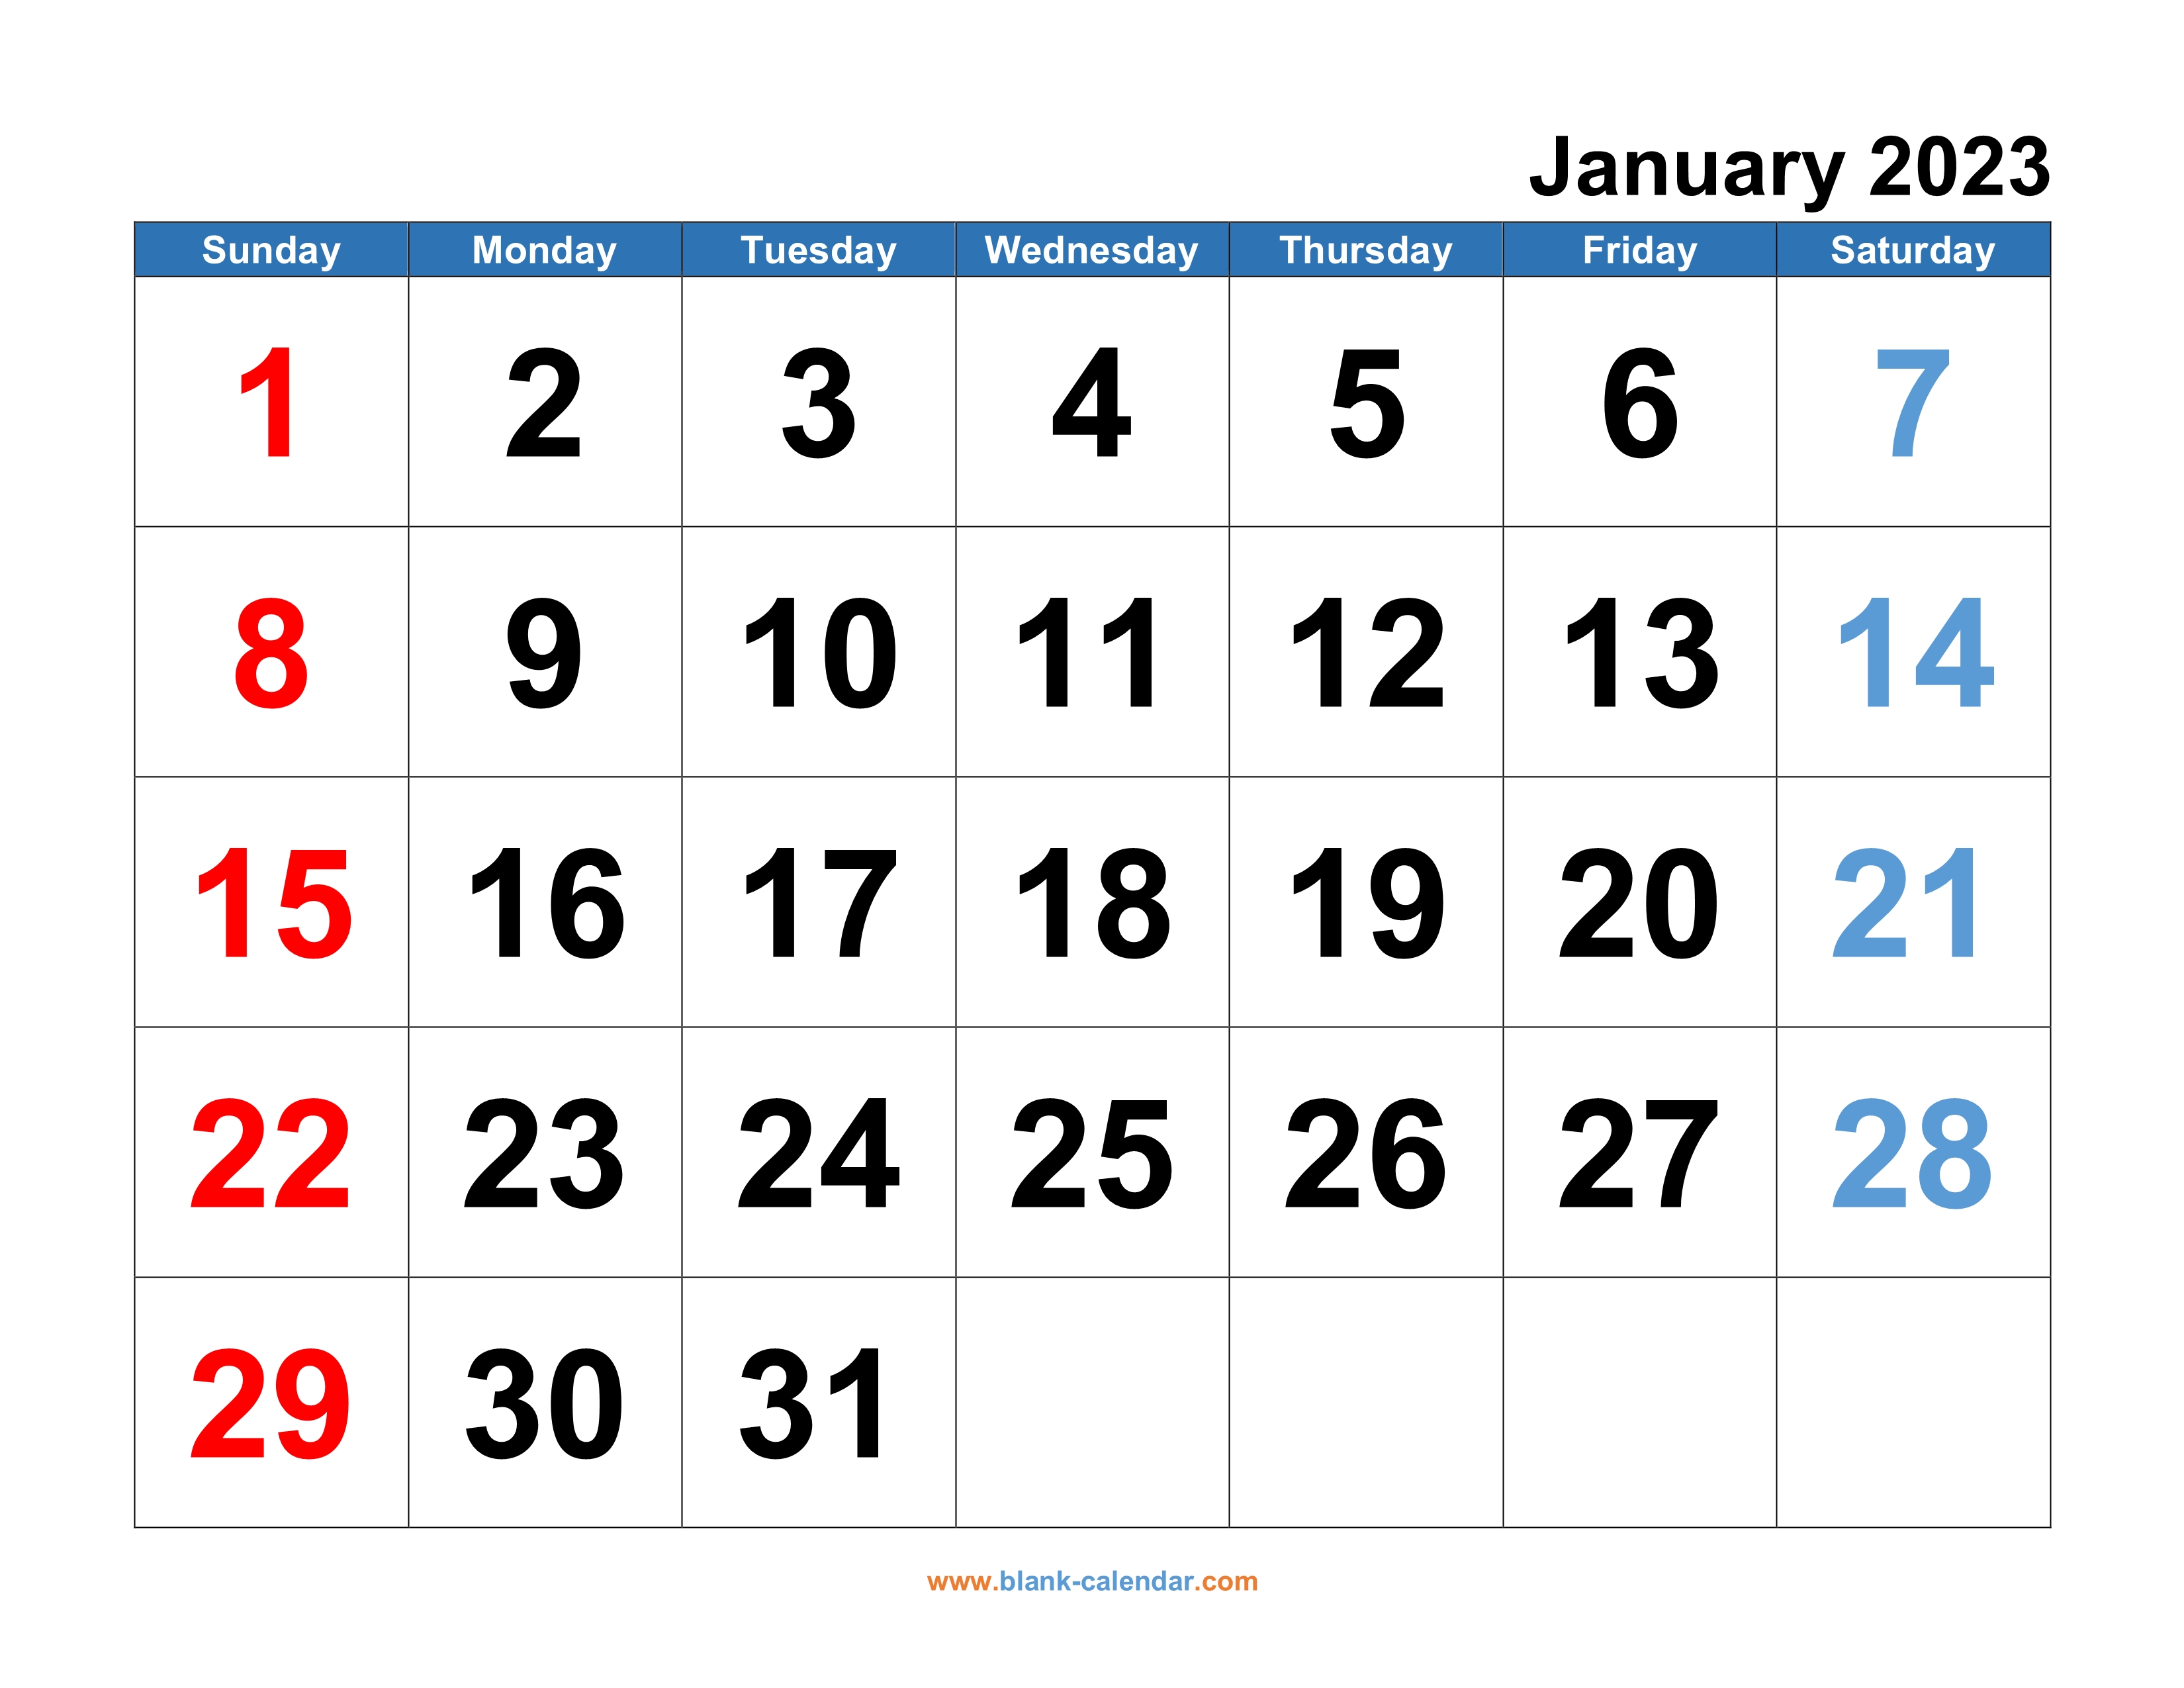 calendar-2023-template-free-download-get-calendar-2023-update